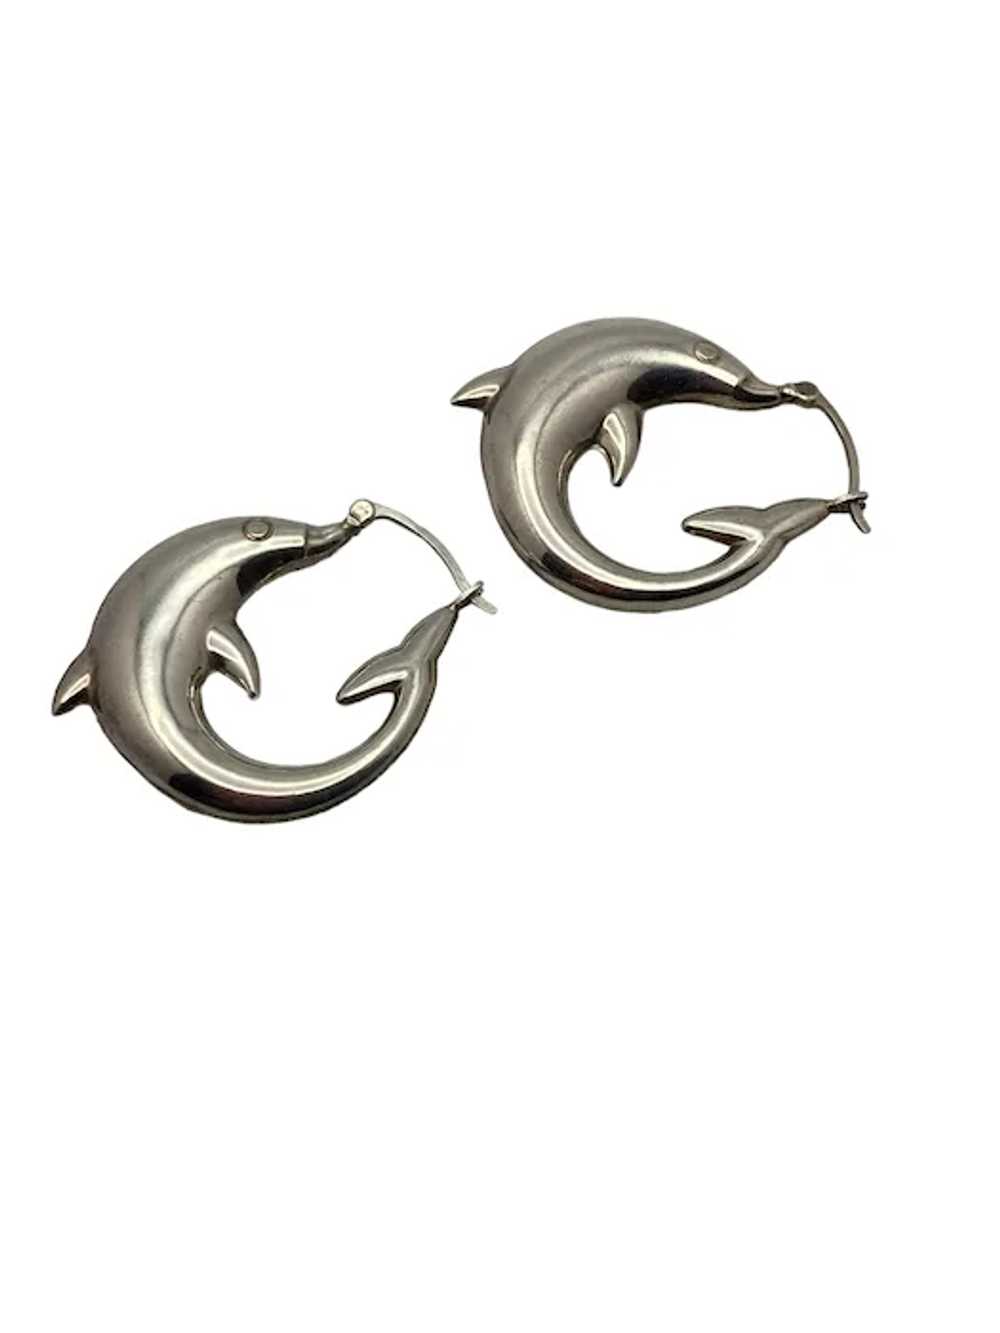 Pair of Sterling Silver Dolphin Hoop Earrings - image 3